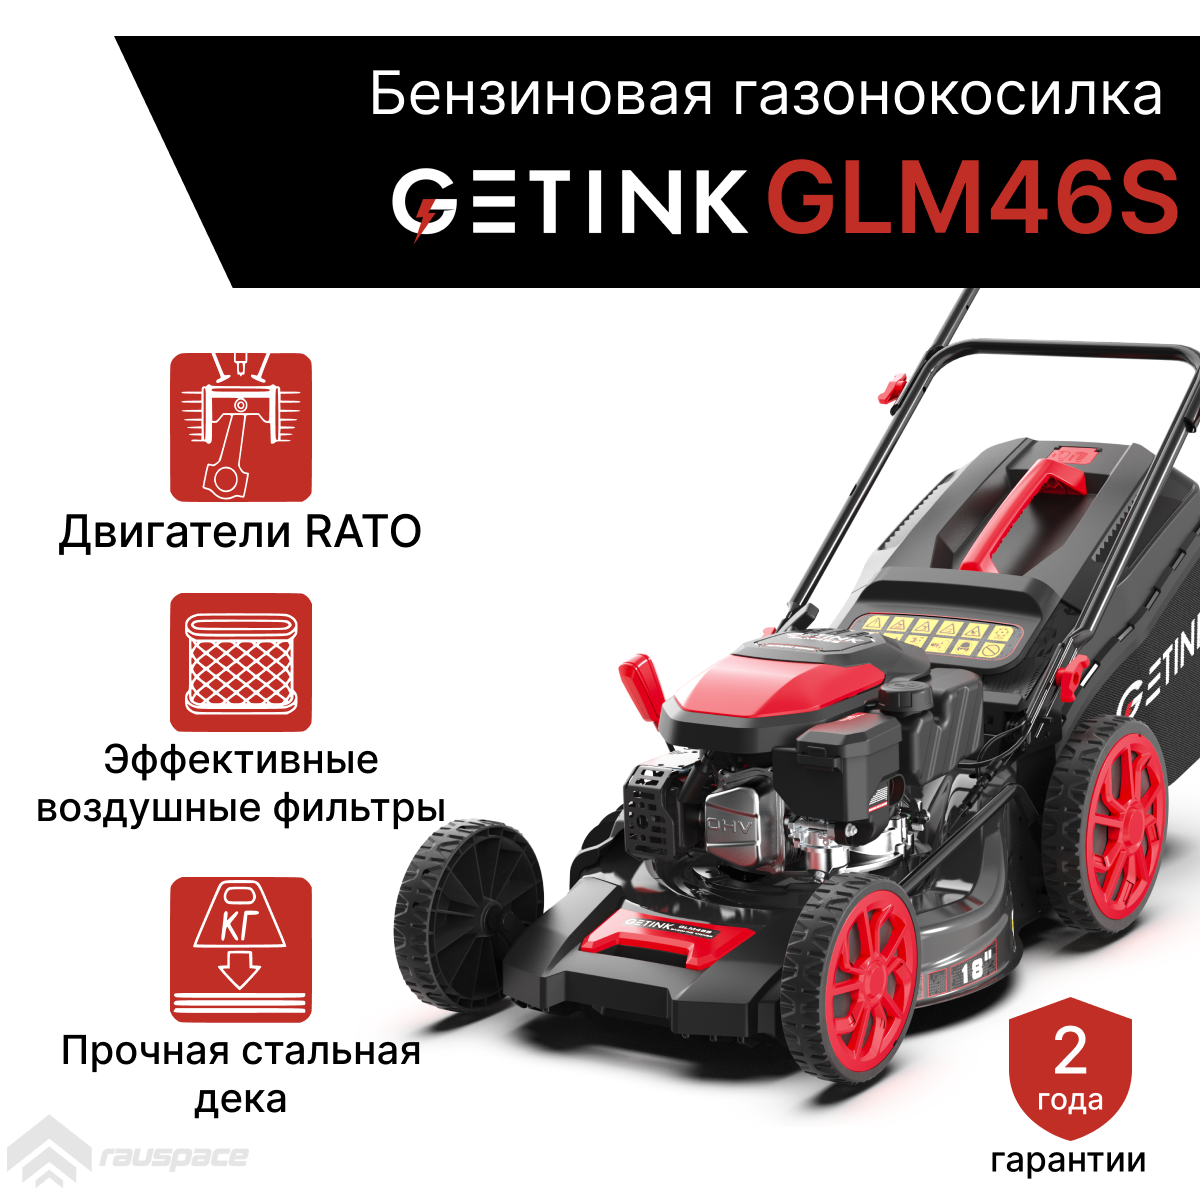 Бензиновая газонокосилка GETINK GLM46S